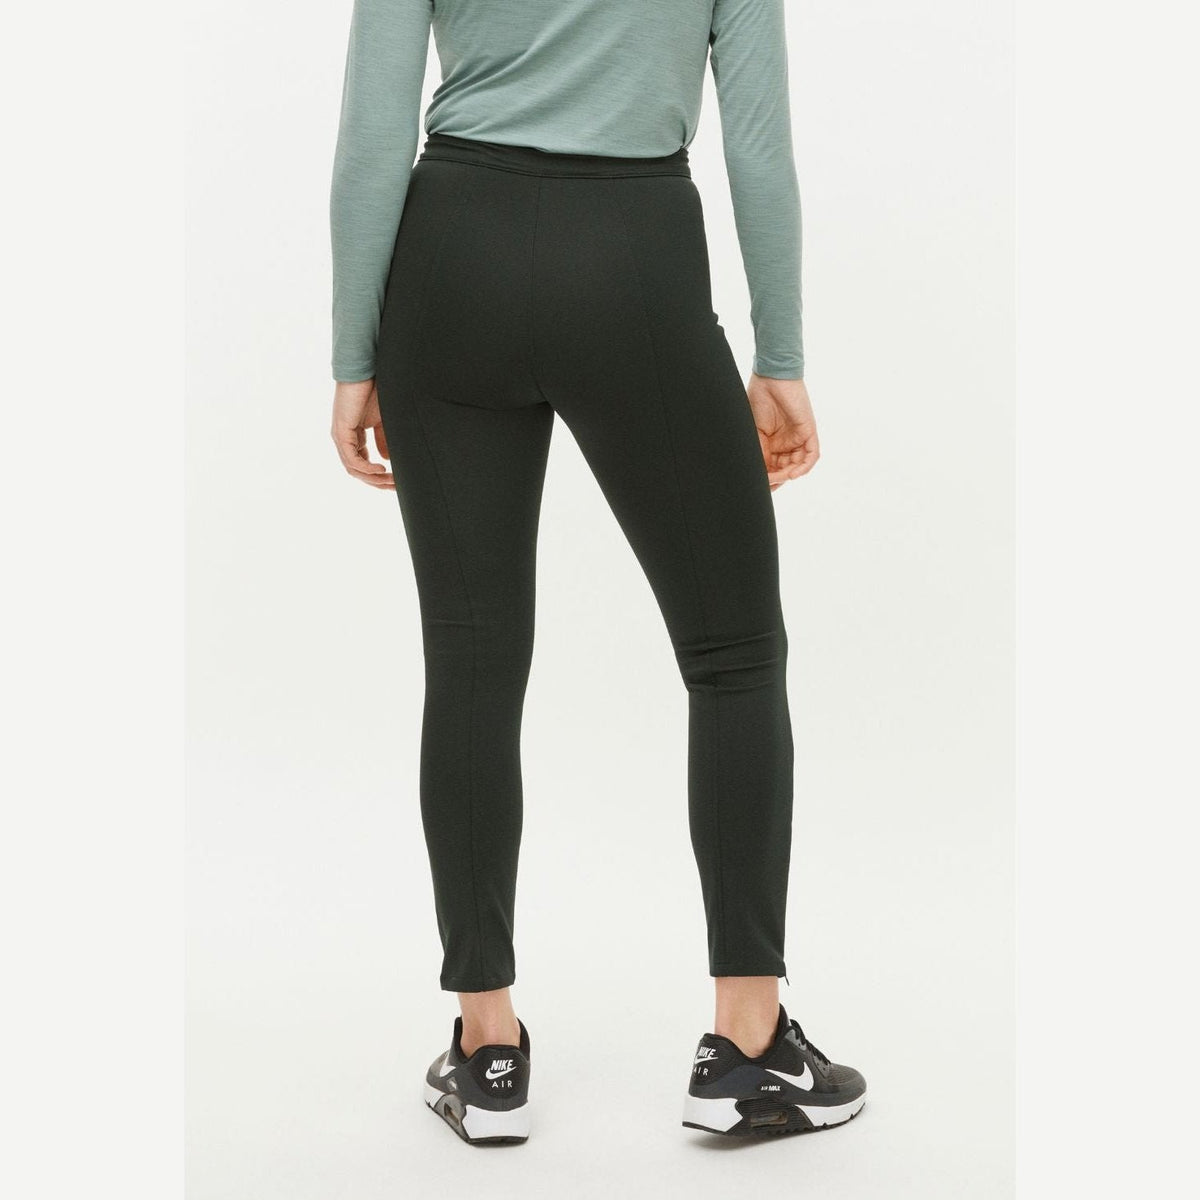 Rohnisch Jessie High Stretch Slim Fit Ladies Golf Pants Black - NEW! 2022